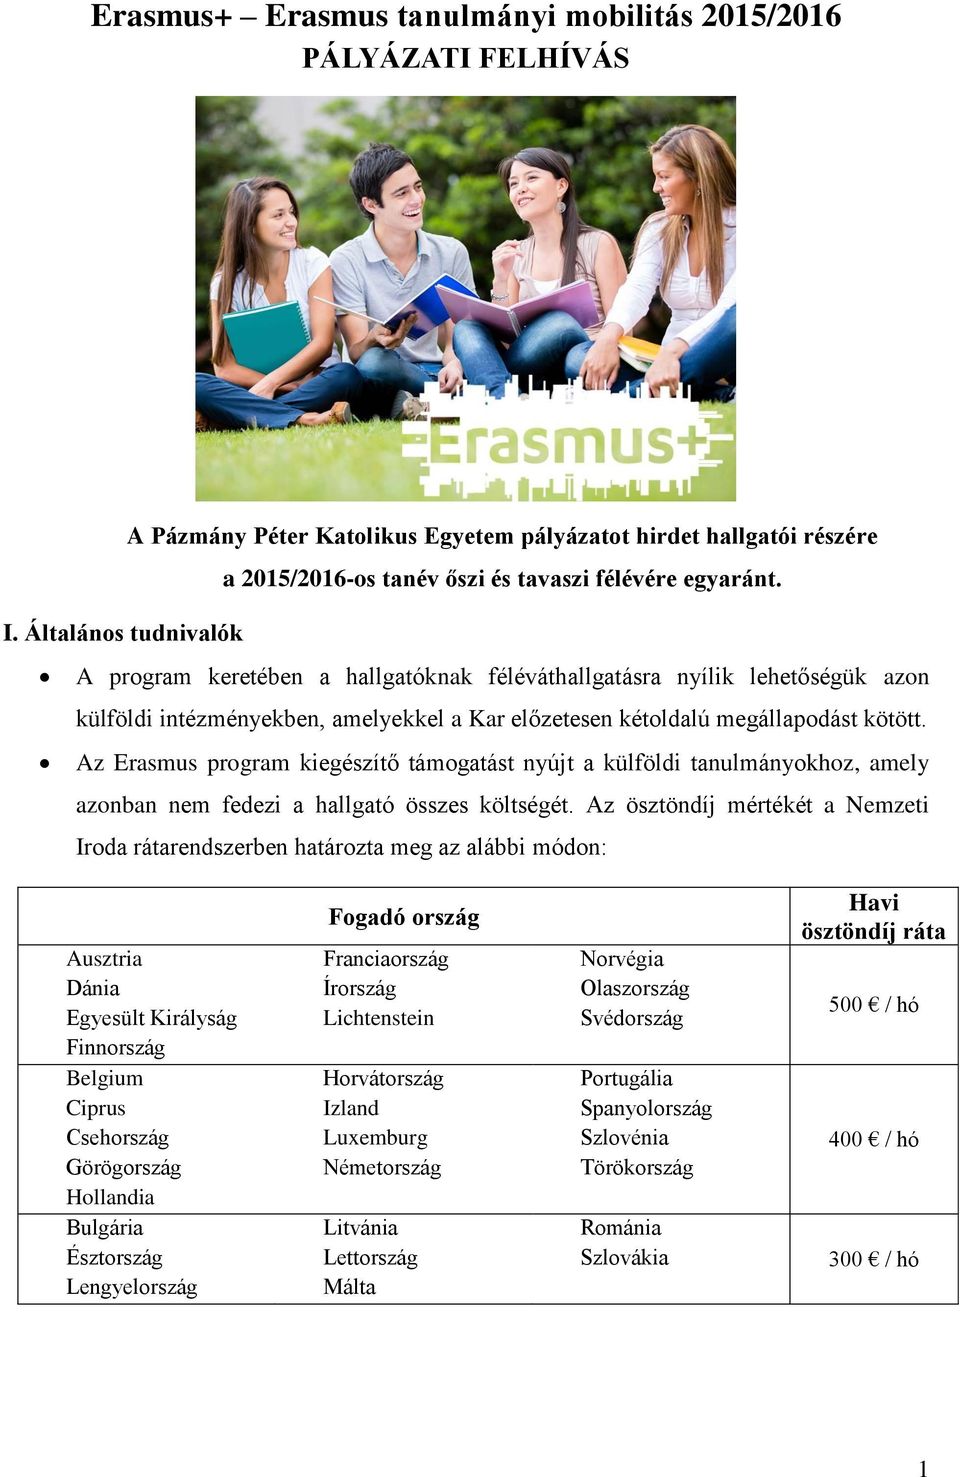 Az Erasmus program kiegészítő támogatást nyújt a külföldi tanulmányokhoz, amely azonban nem fedezi a hallgató összes költségét.